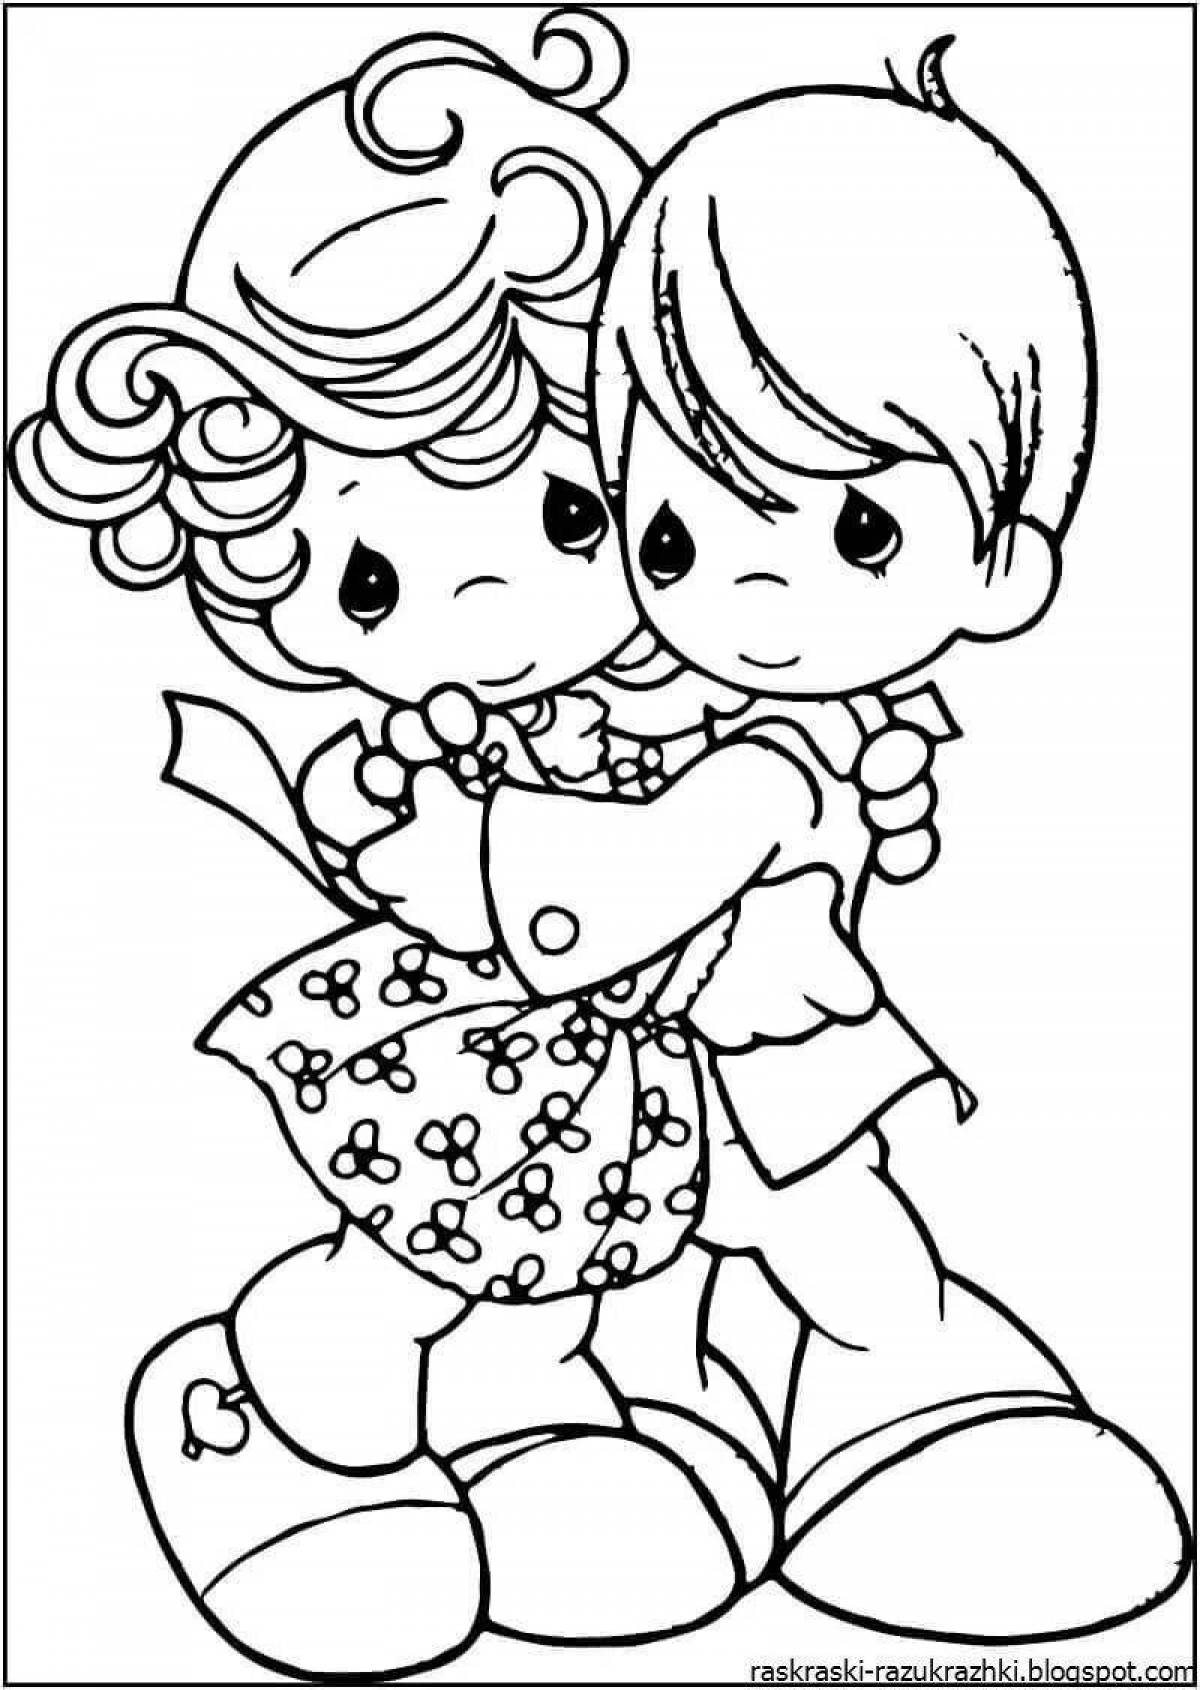 Раскраска zany hug day для детей